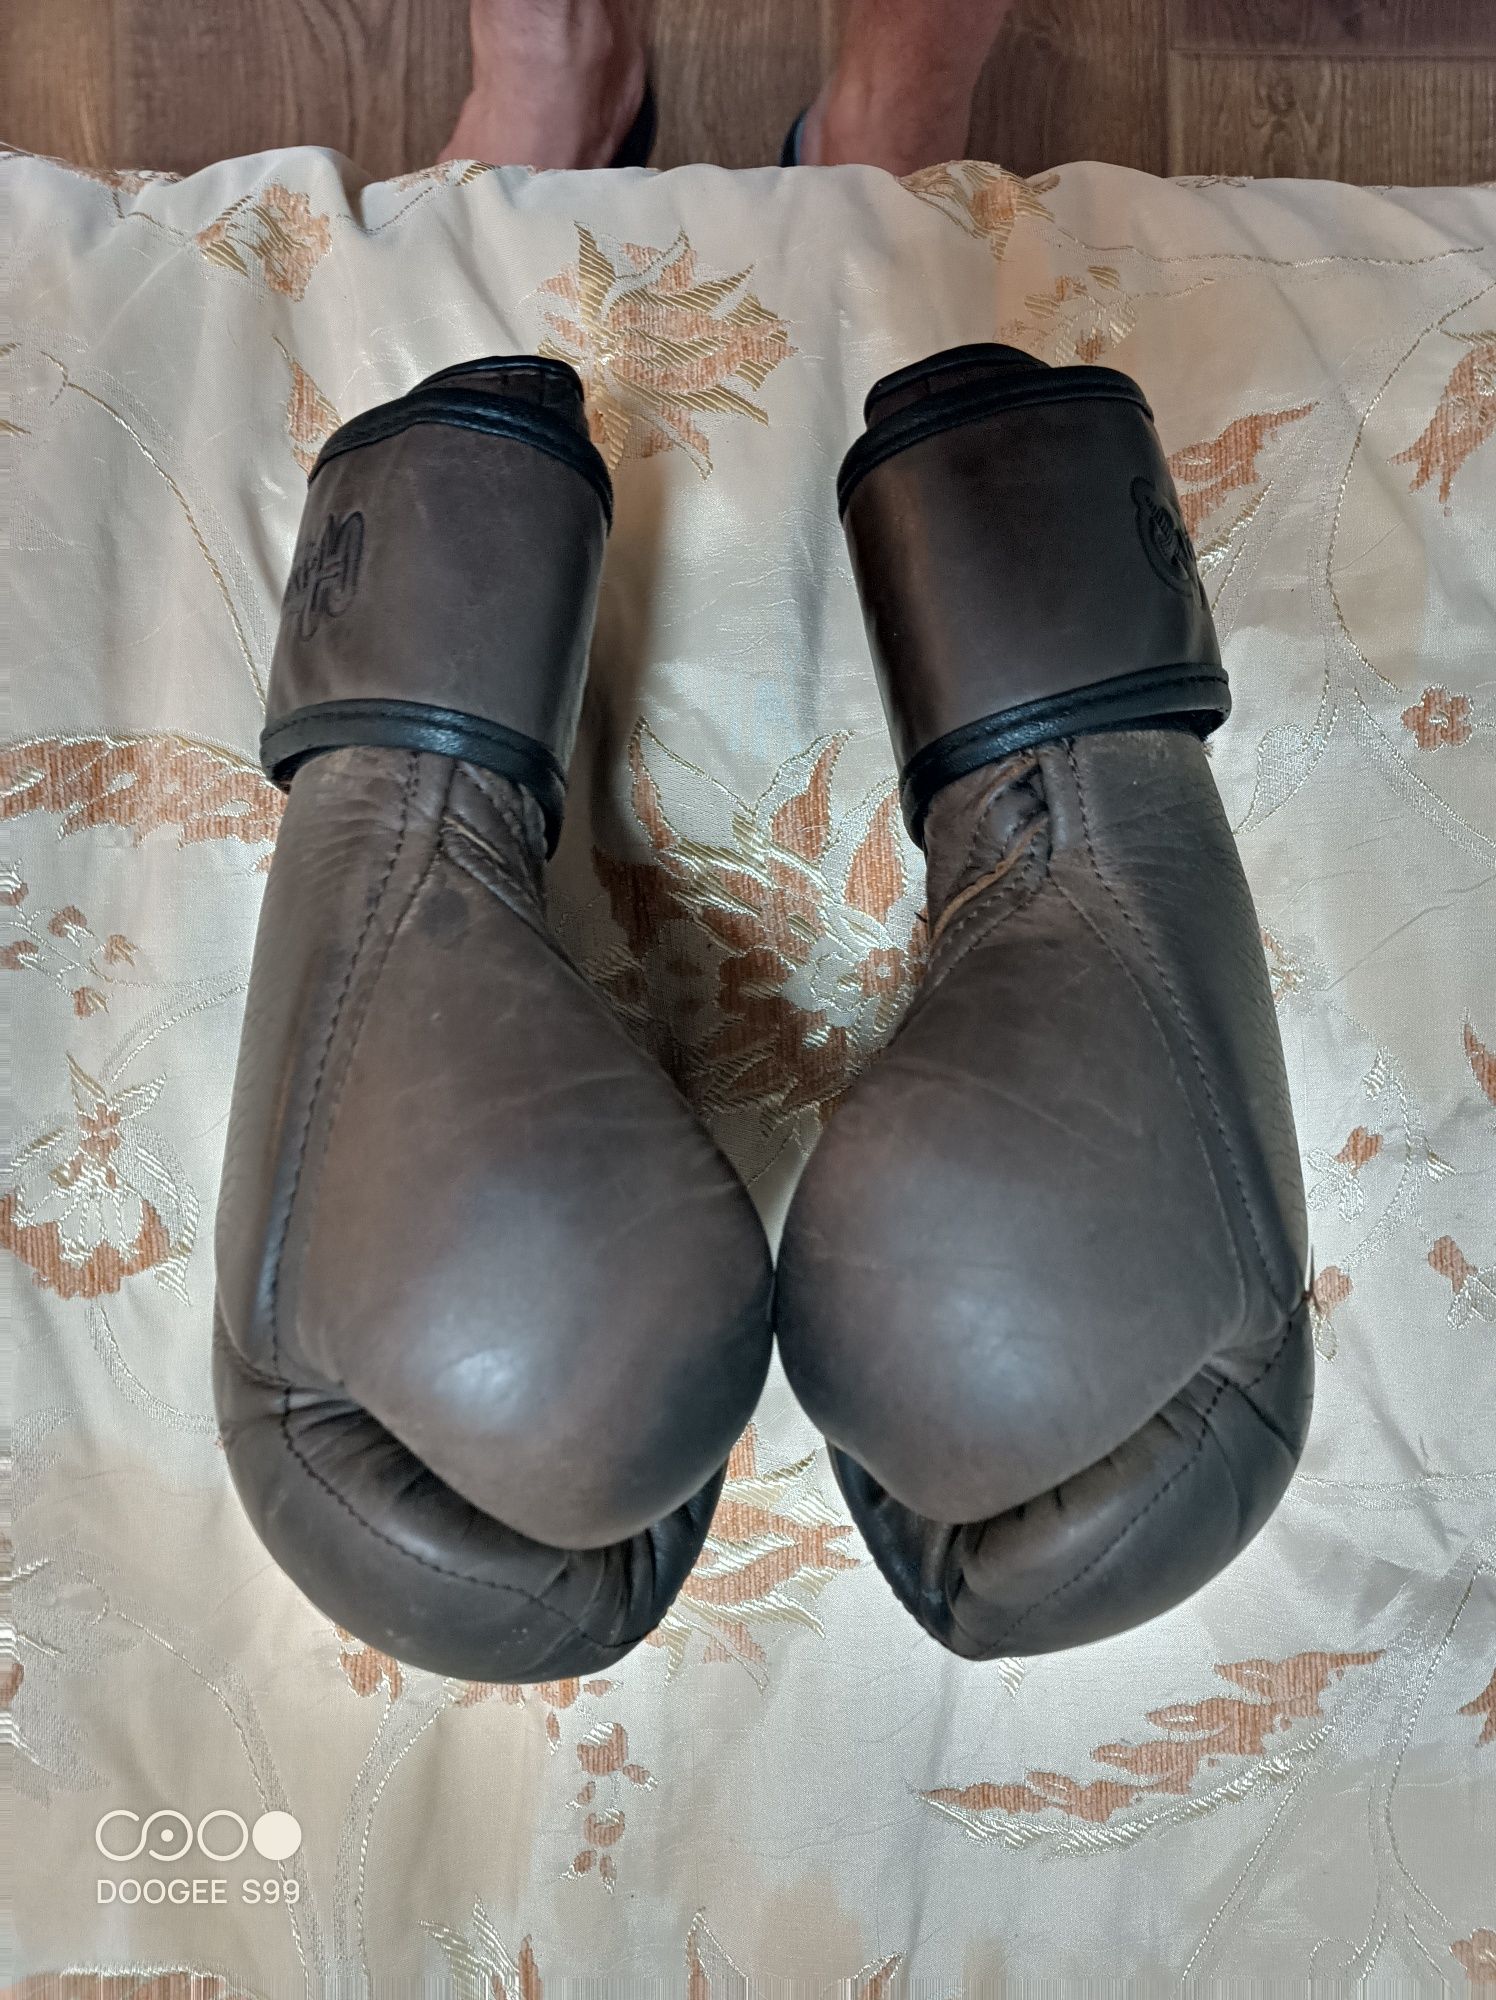 Боксерские перчатки hayabusa